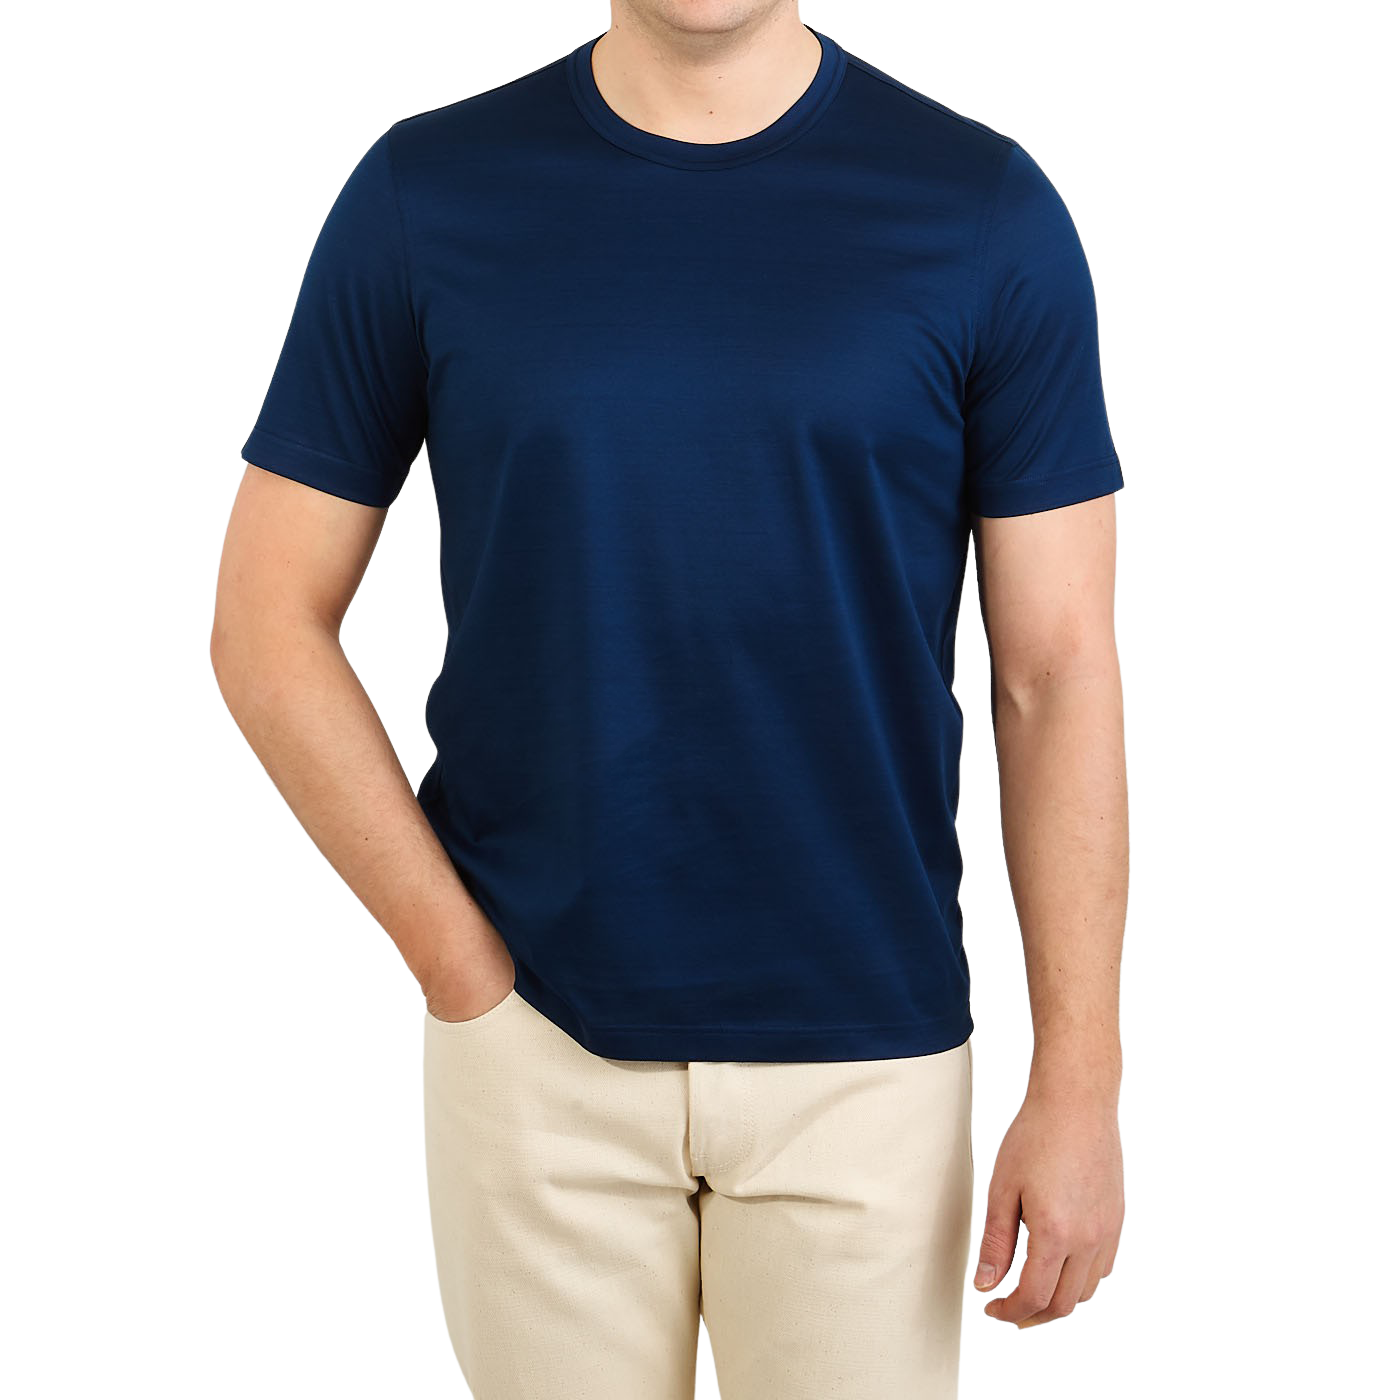 Gran Sasso Andere materialien t-shirt in Blau Damen Bekleidung Oberteile T-Shirts 